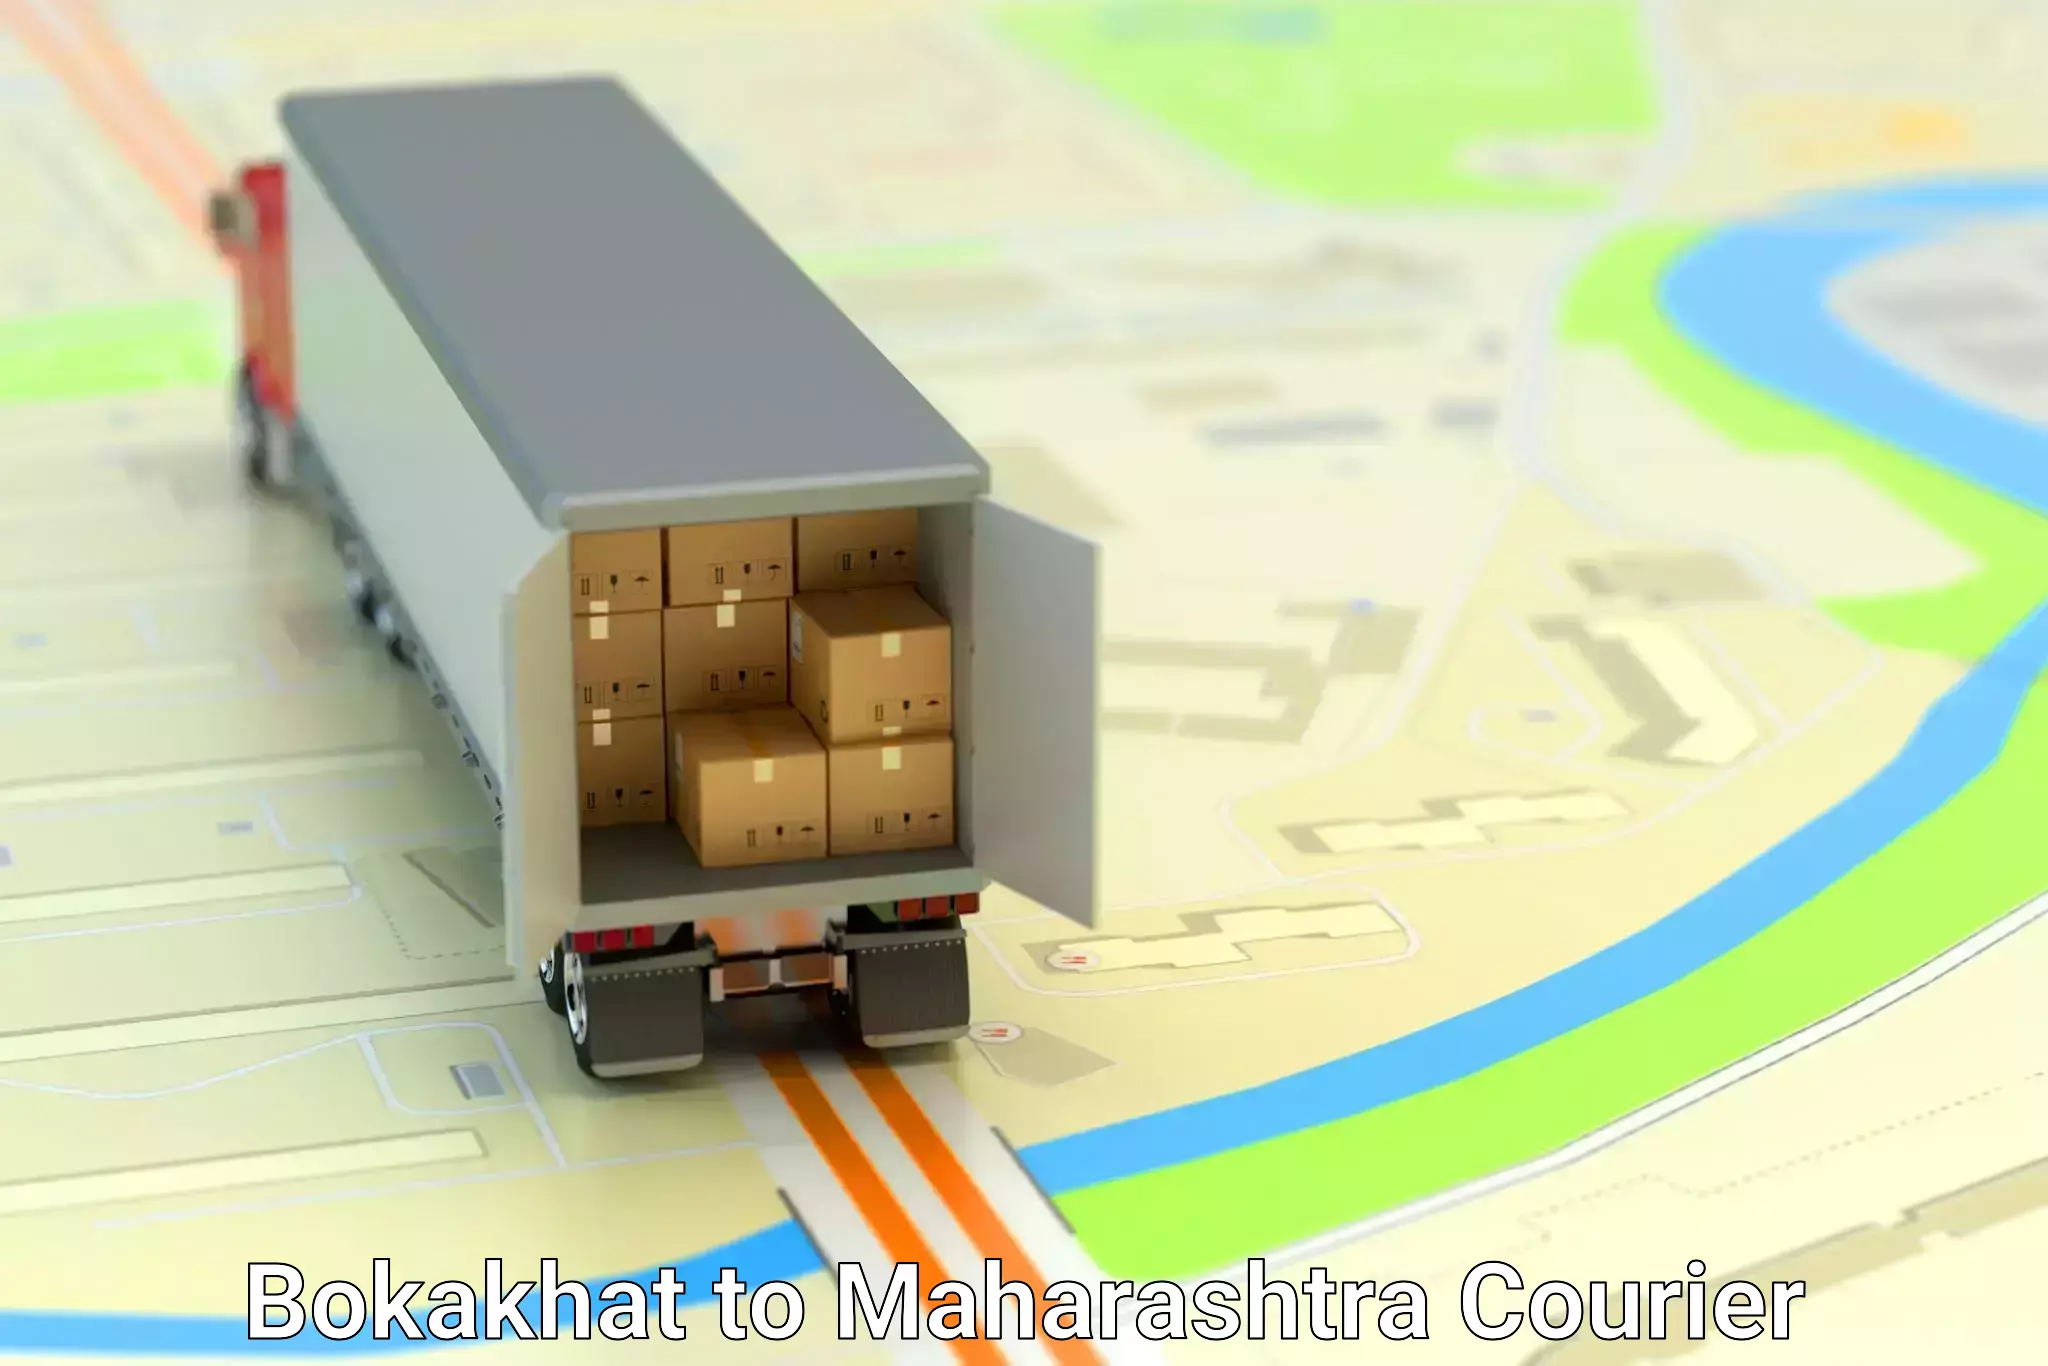 Efficient parcel transport in Bokakhat to Alibag